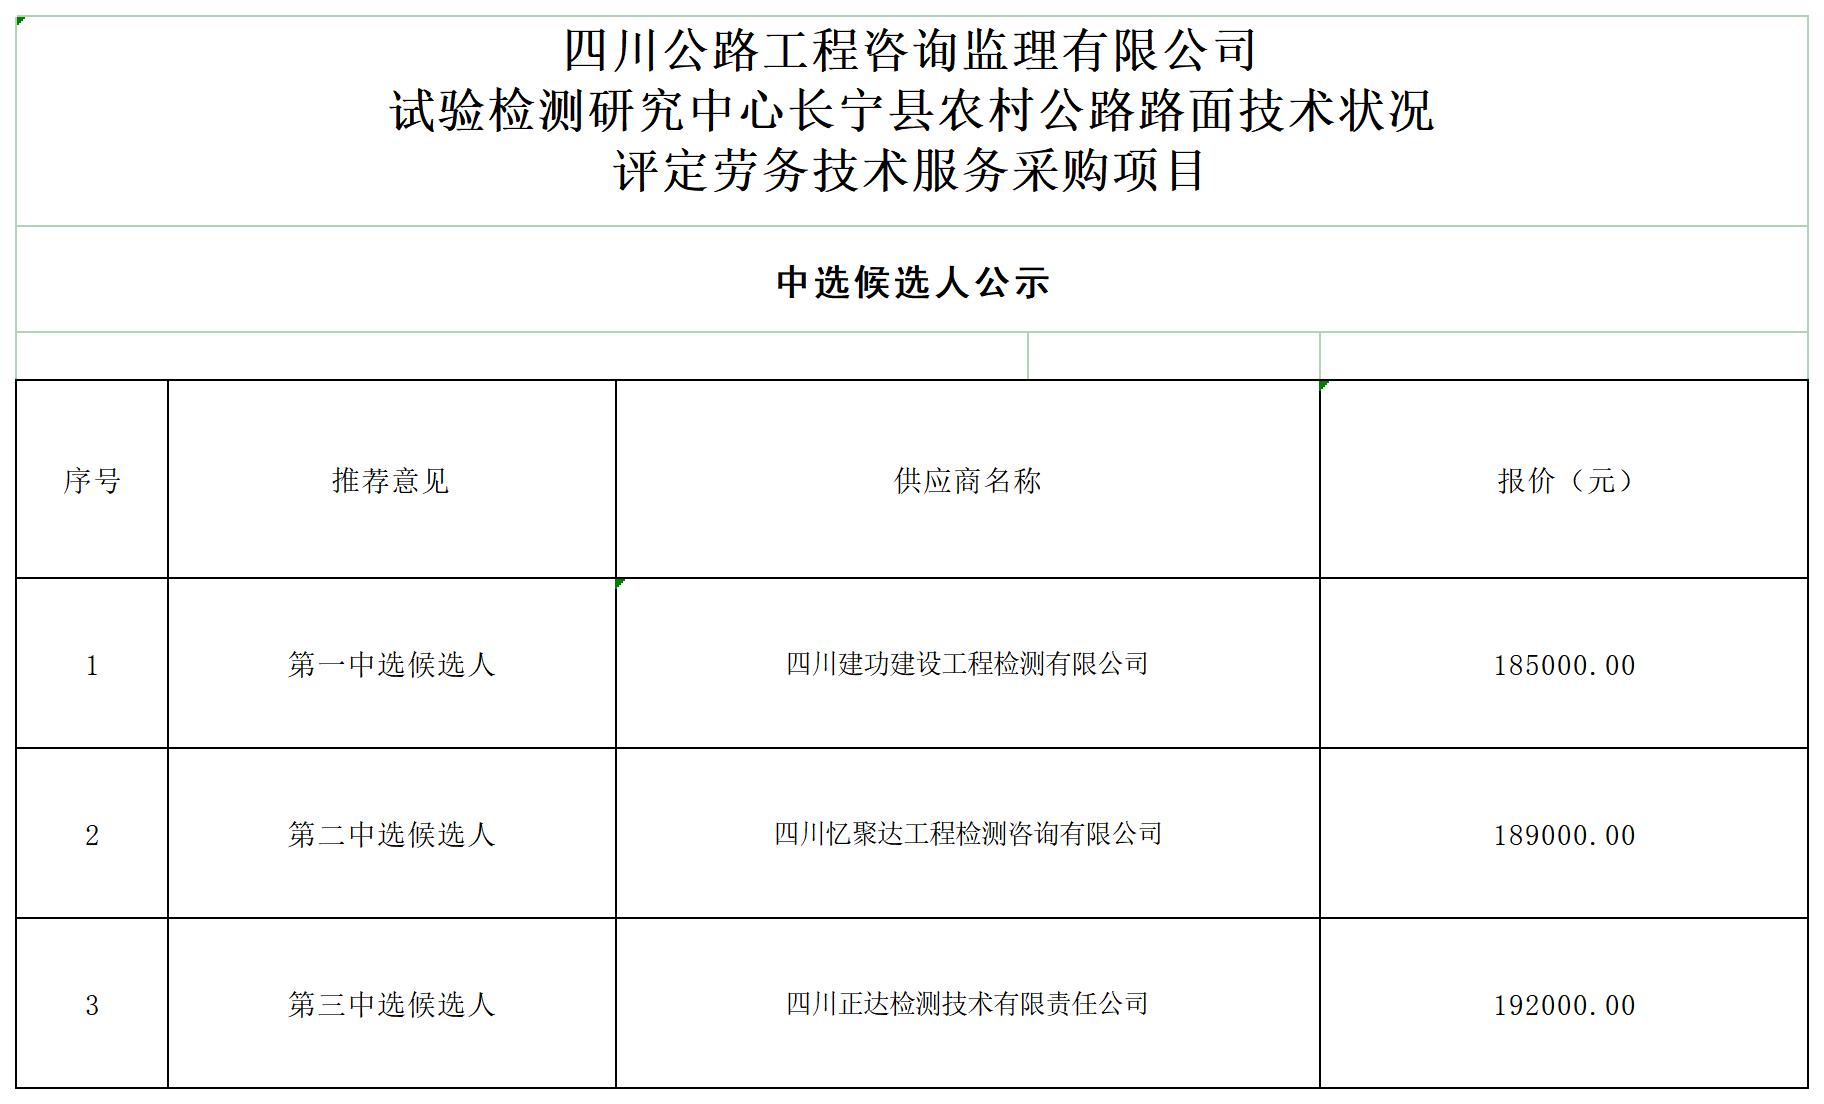 试验检测研究中心长宁县农村公路路面技术状况中选候选人公示_A1E7.jpg